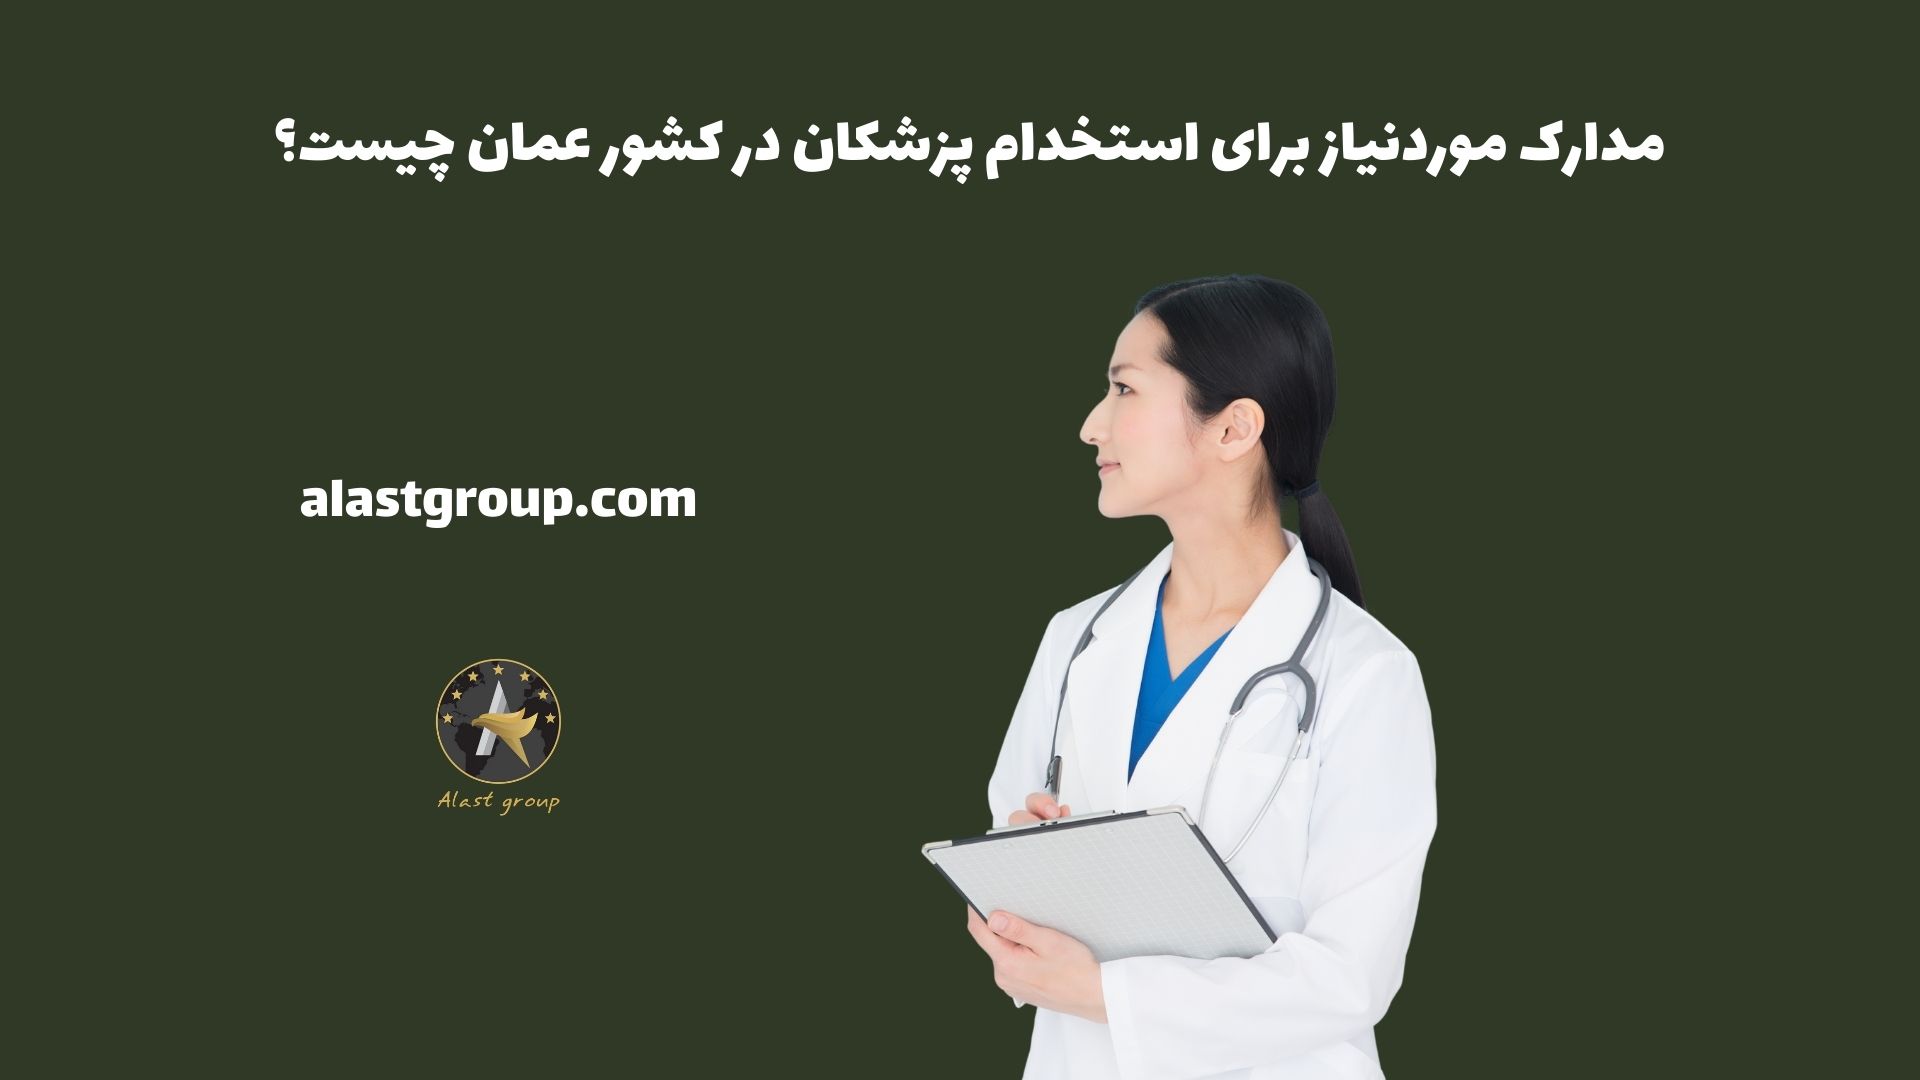 مدارک موردنیاز برای استخدام پزشکان در کشور عمان چیست؟